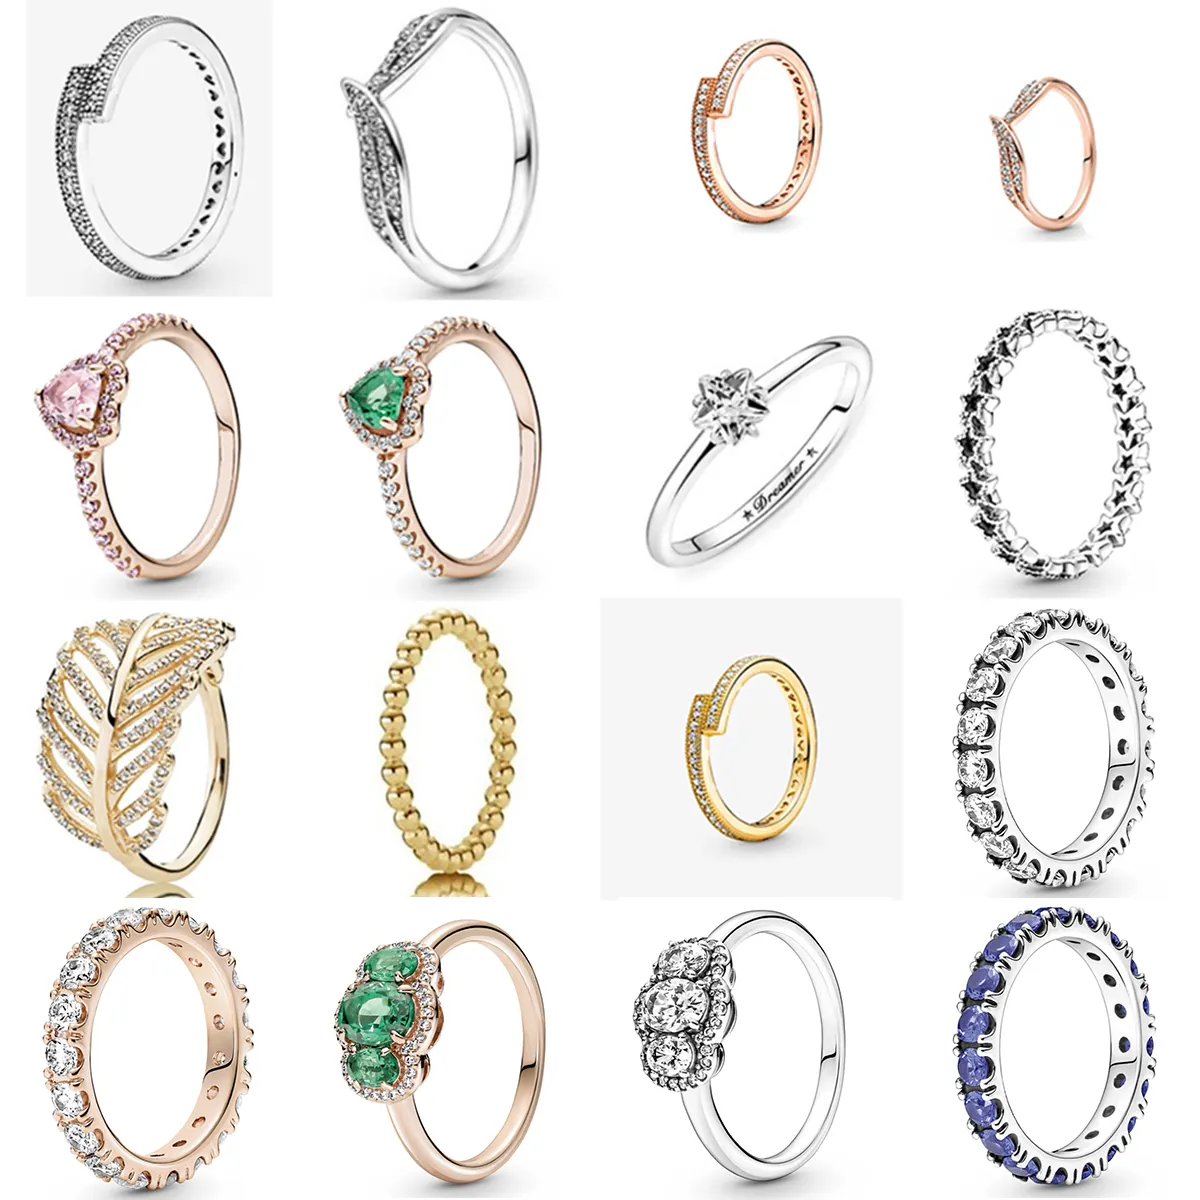 جديد 2021100٪ 925 فضة شتاء جديد نمط سلسلة جمع خاتم تناسب المرأة الأوروبية الفاخرة الأصلية مجوهرات الأزياء هدية